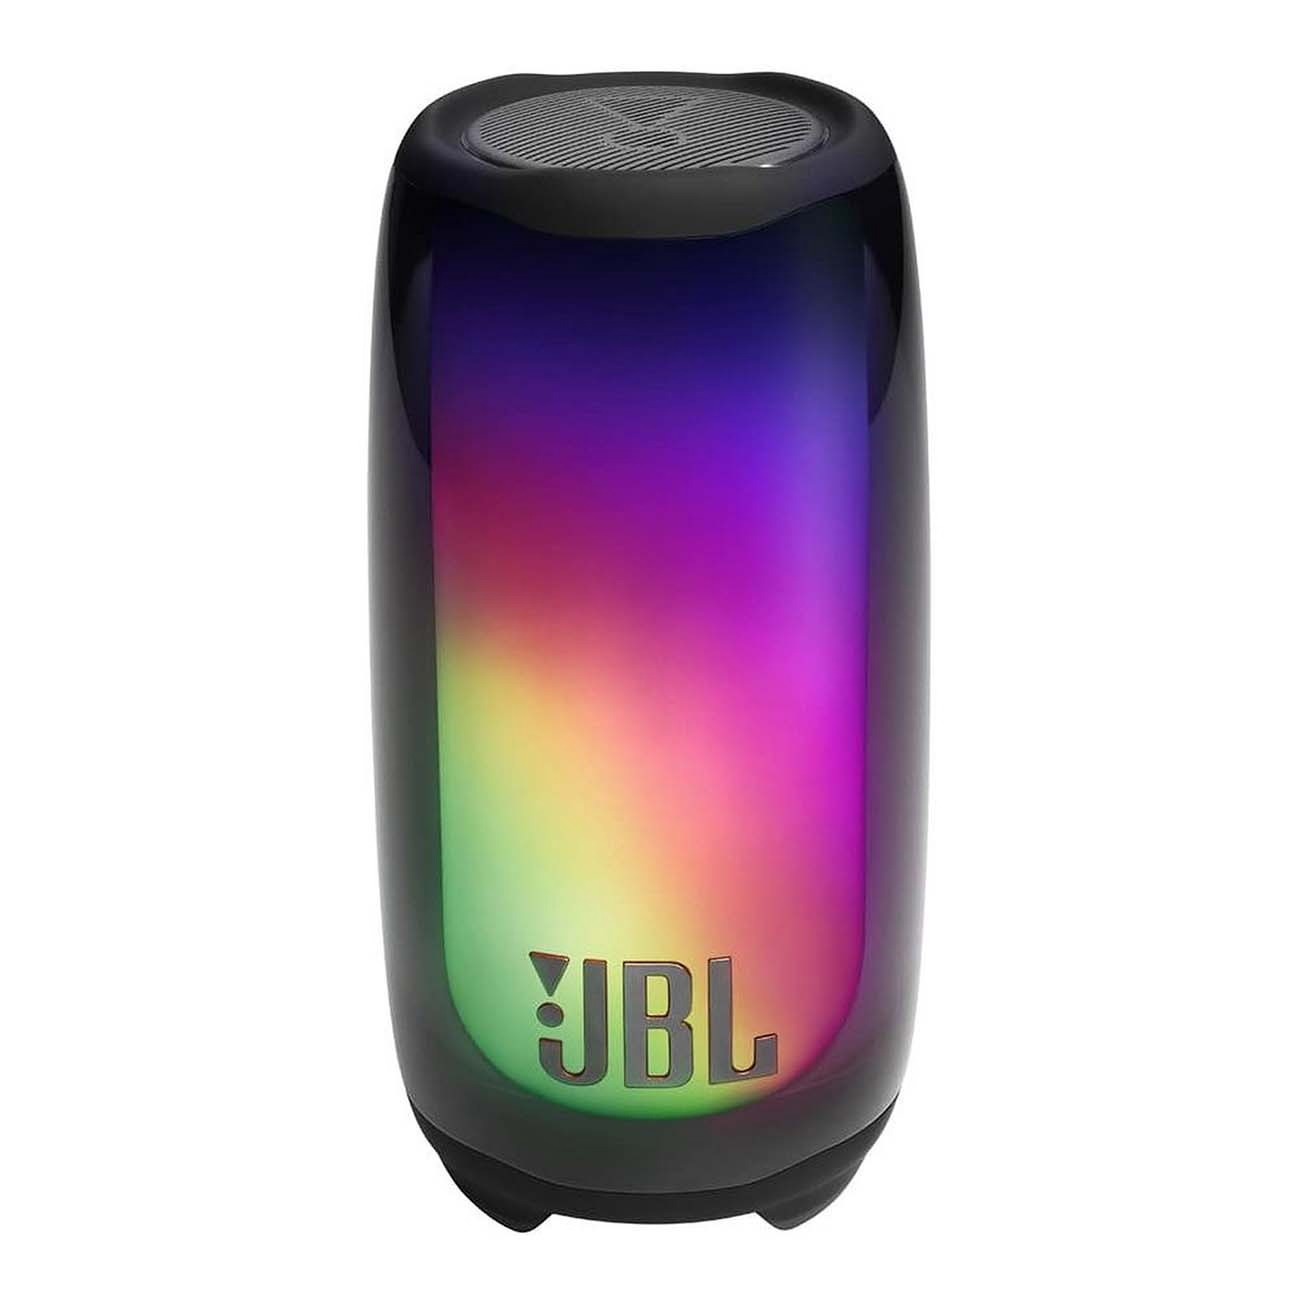 Купить портативная колонка jbl pulse 5 black JBL в официальном магазине Apple, Samsung, Xiaomi. iPixel.ru Купить, заказ, кредит, рассрочка, отзывы,  характеристики, цена,  фотографии, в подарок.